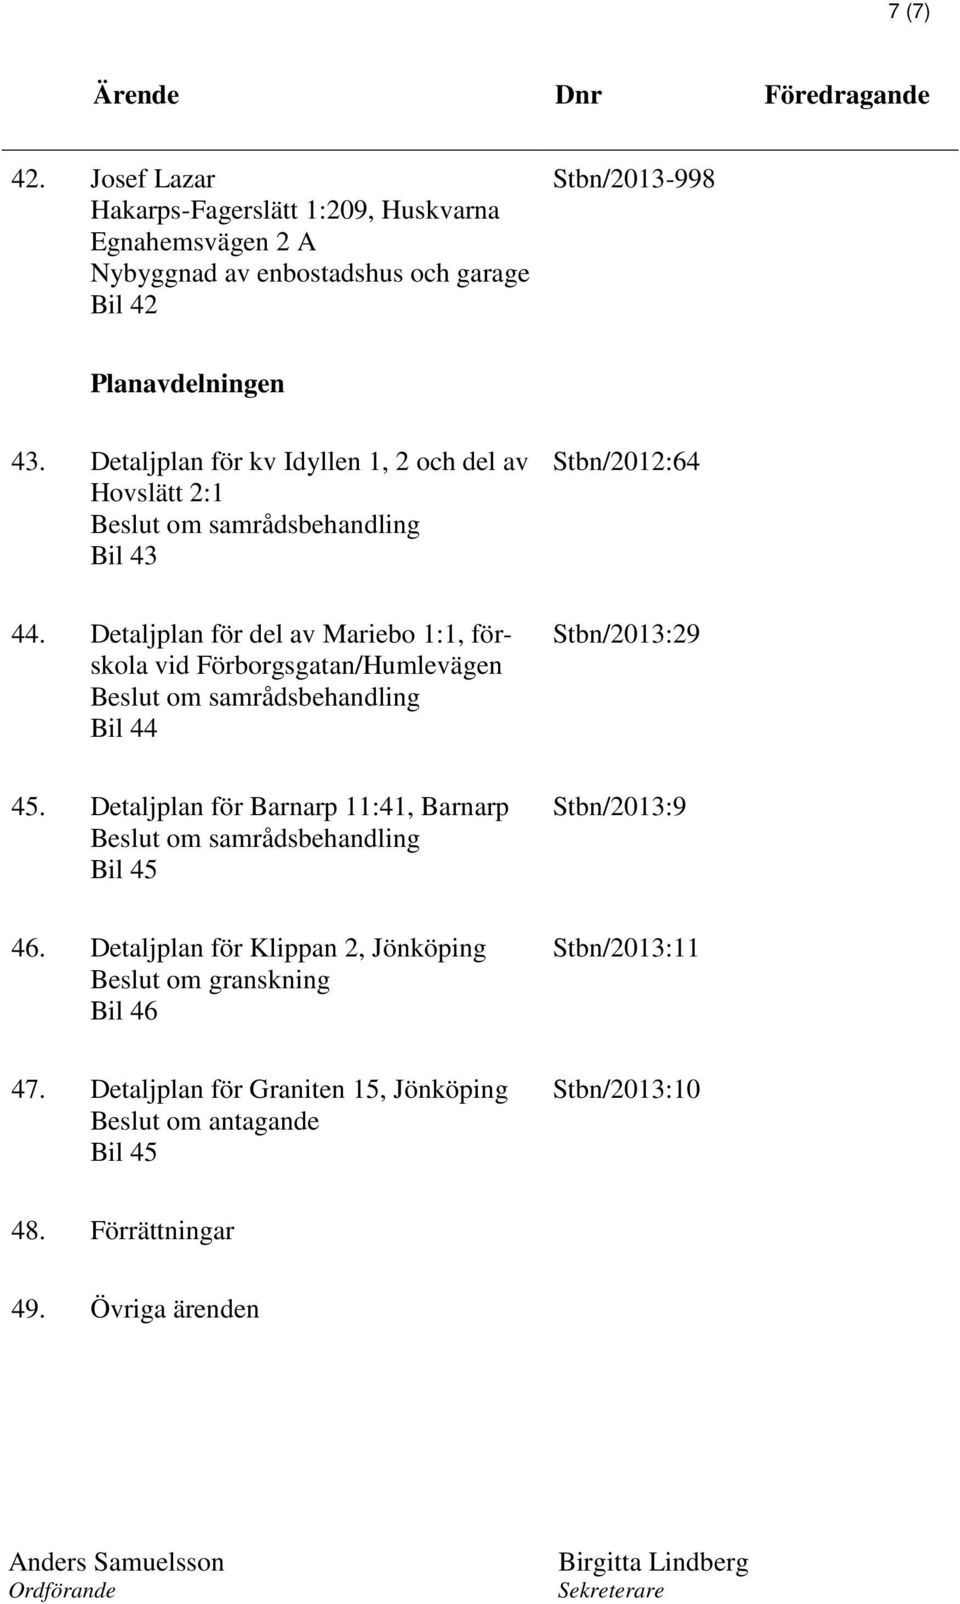 Detaljplan för del av Mariebo 1:1, förskola vid Förborgsgatan/Humlevägen Beslut om samrådsbehandling Bil 44 Stbn/2013:29 45.